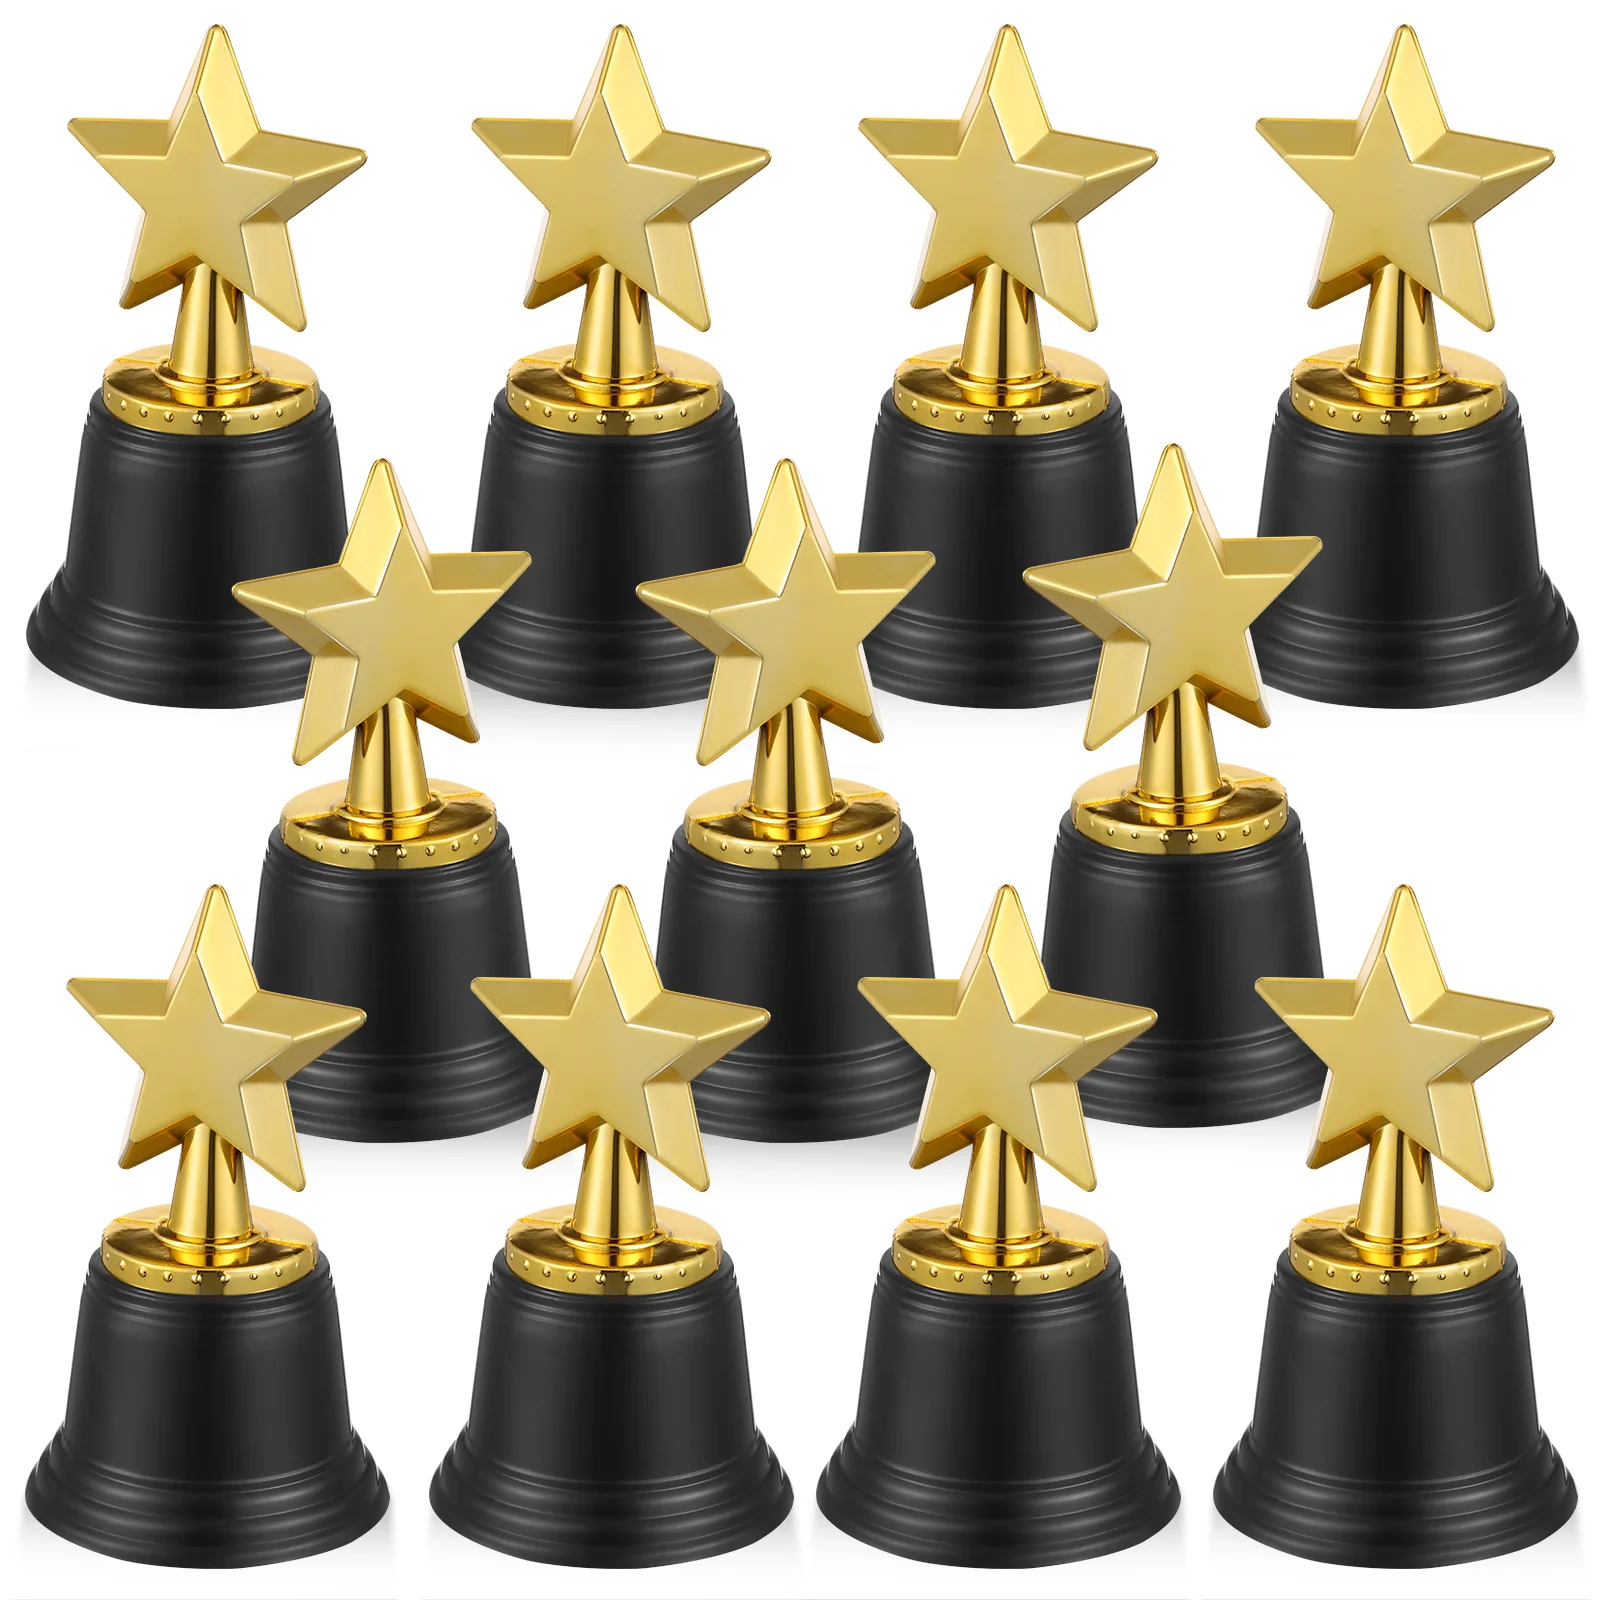 

20 Pcs Bulk Kids Prizes Trophy Toy Five-point Star Plaque Party Favors Plastic Award Race Child